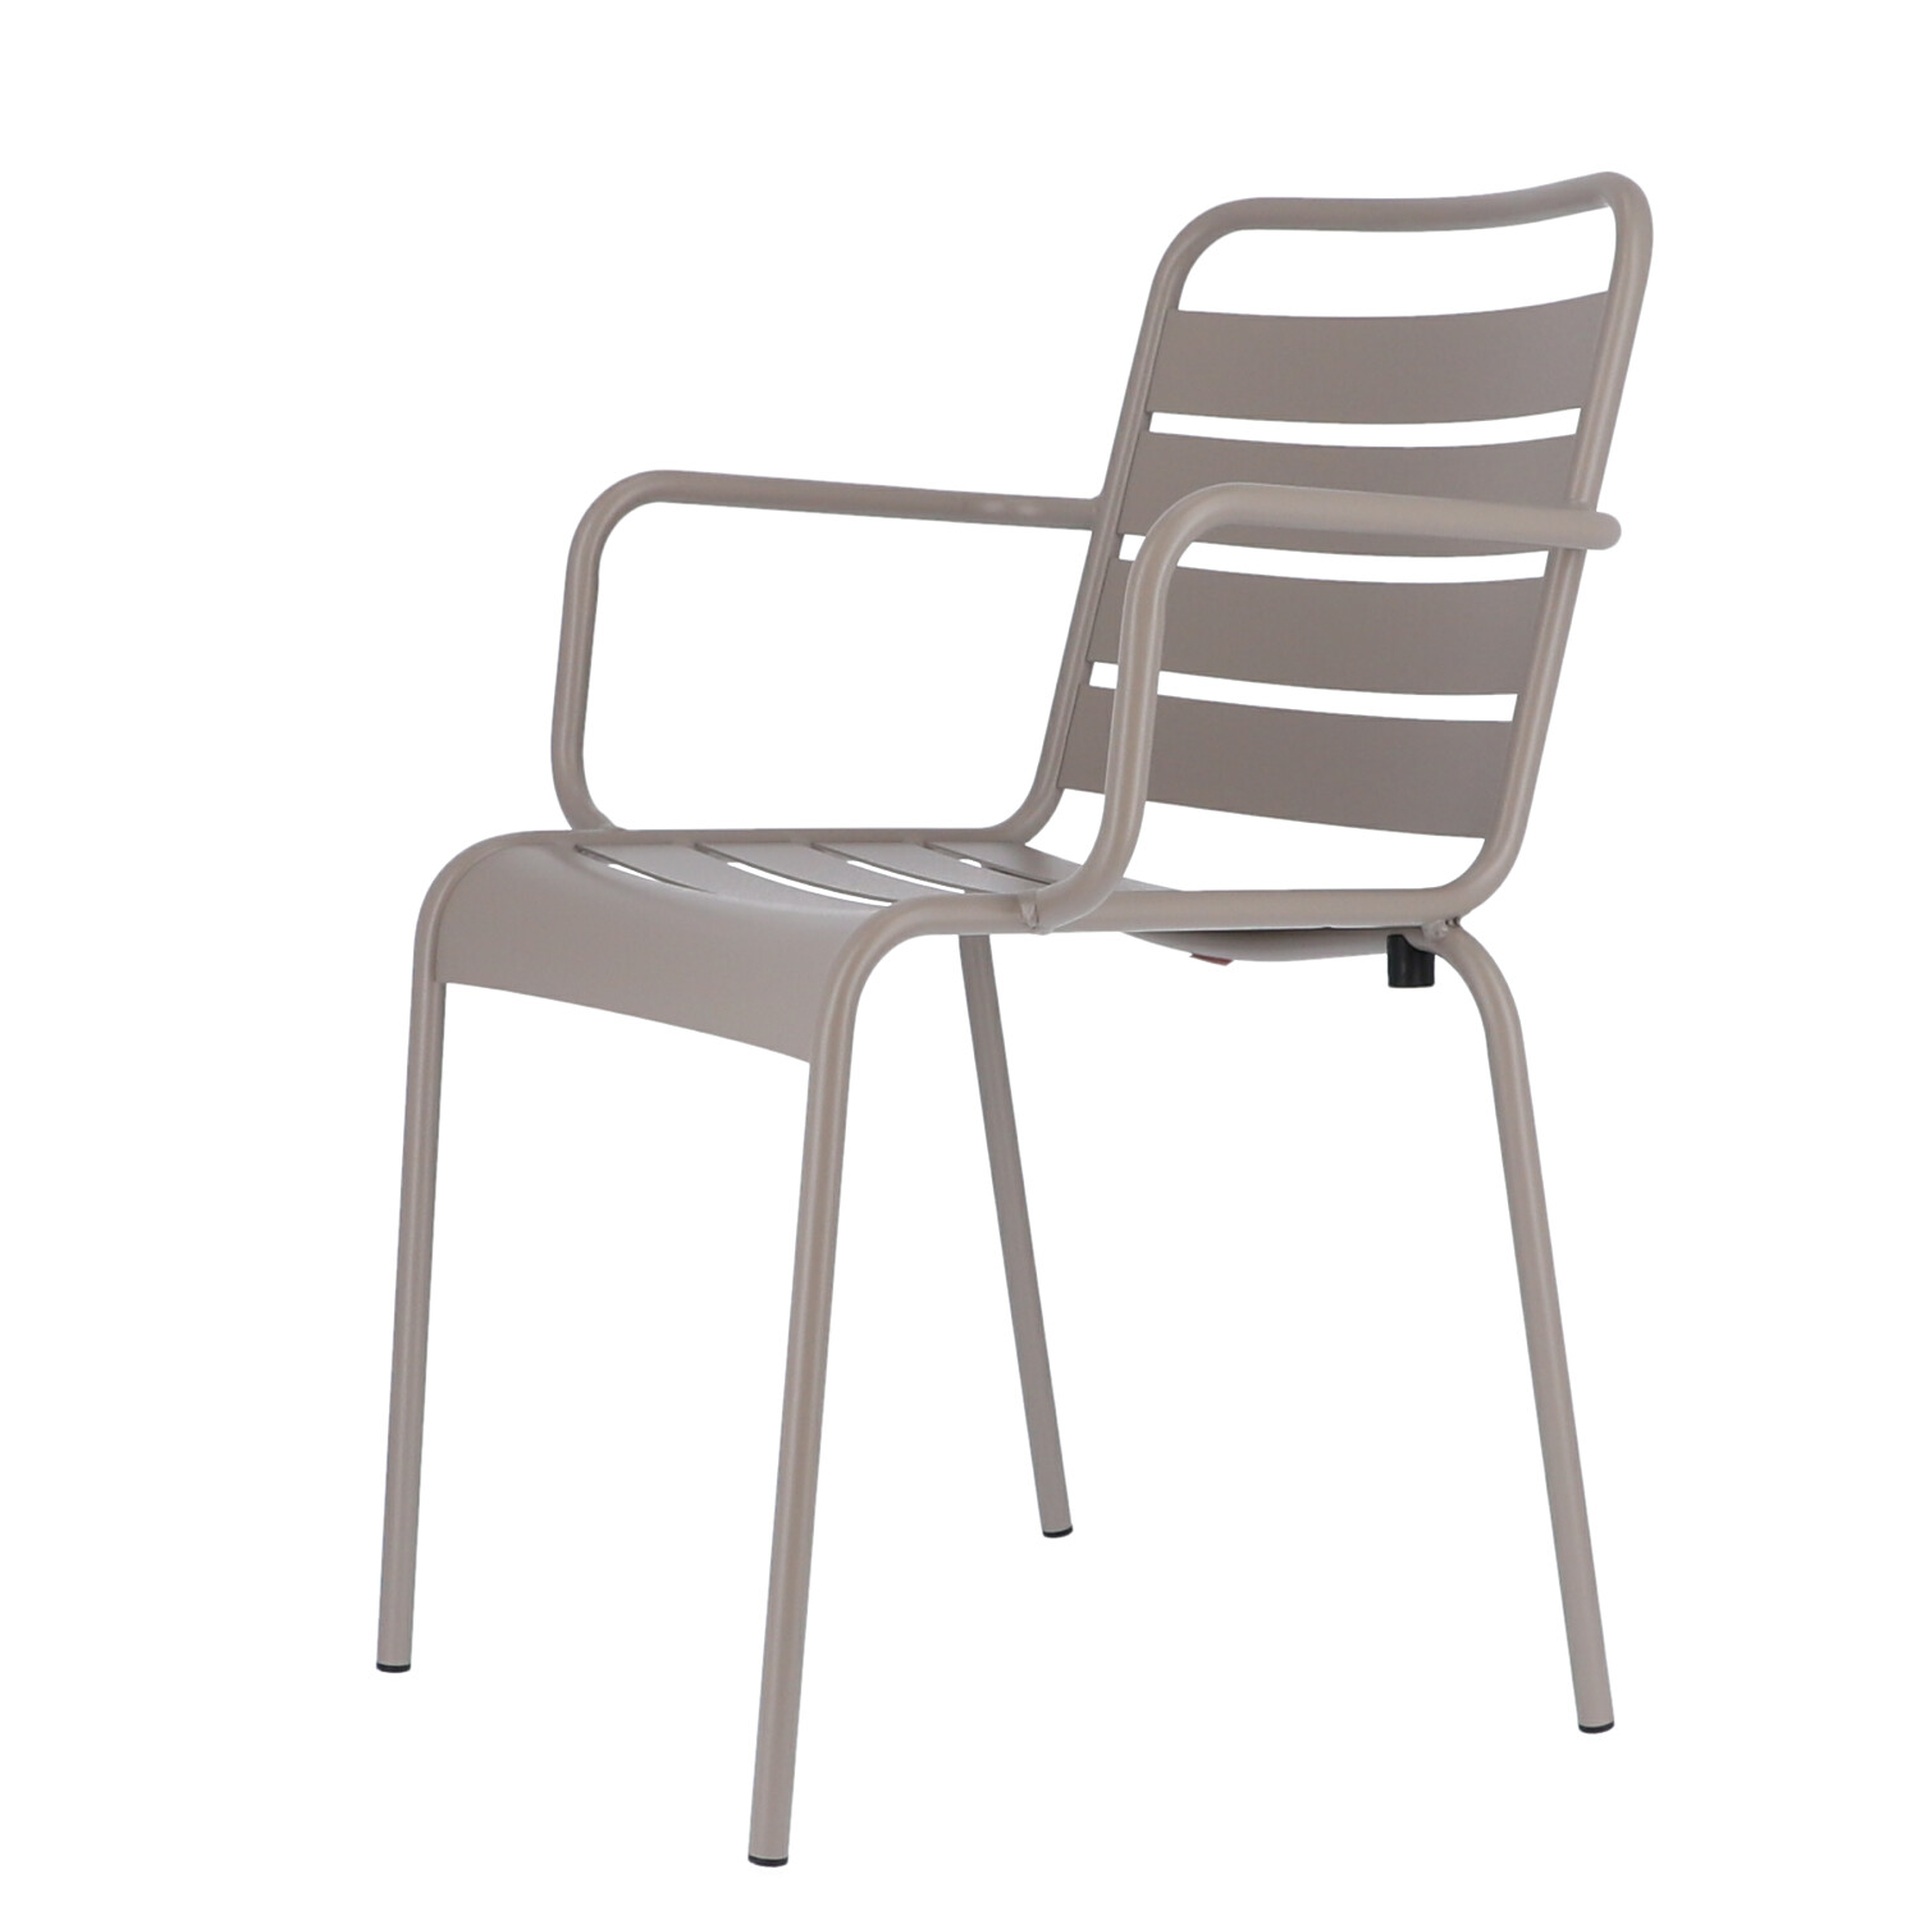 Der moderne Stapelsessel Mya wurde aus Aluminium gefertigt und hat einen taupe Farbton. Designet wurde der Sessel von der Marke Jan Kurtz.